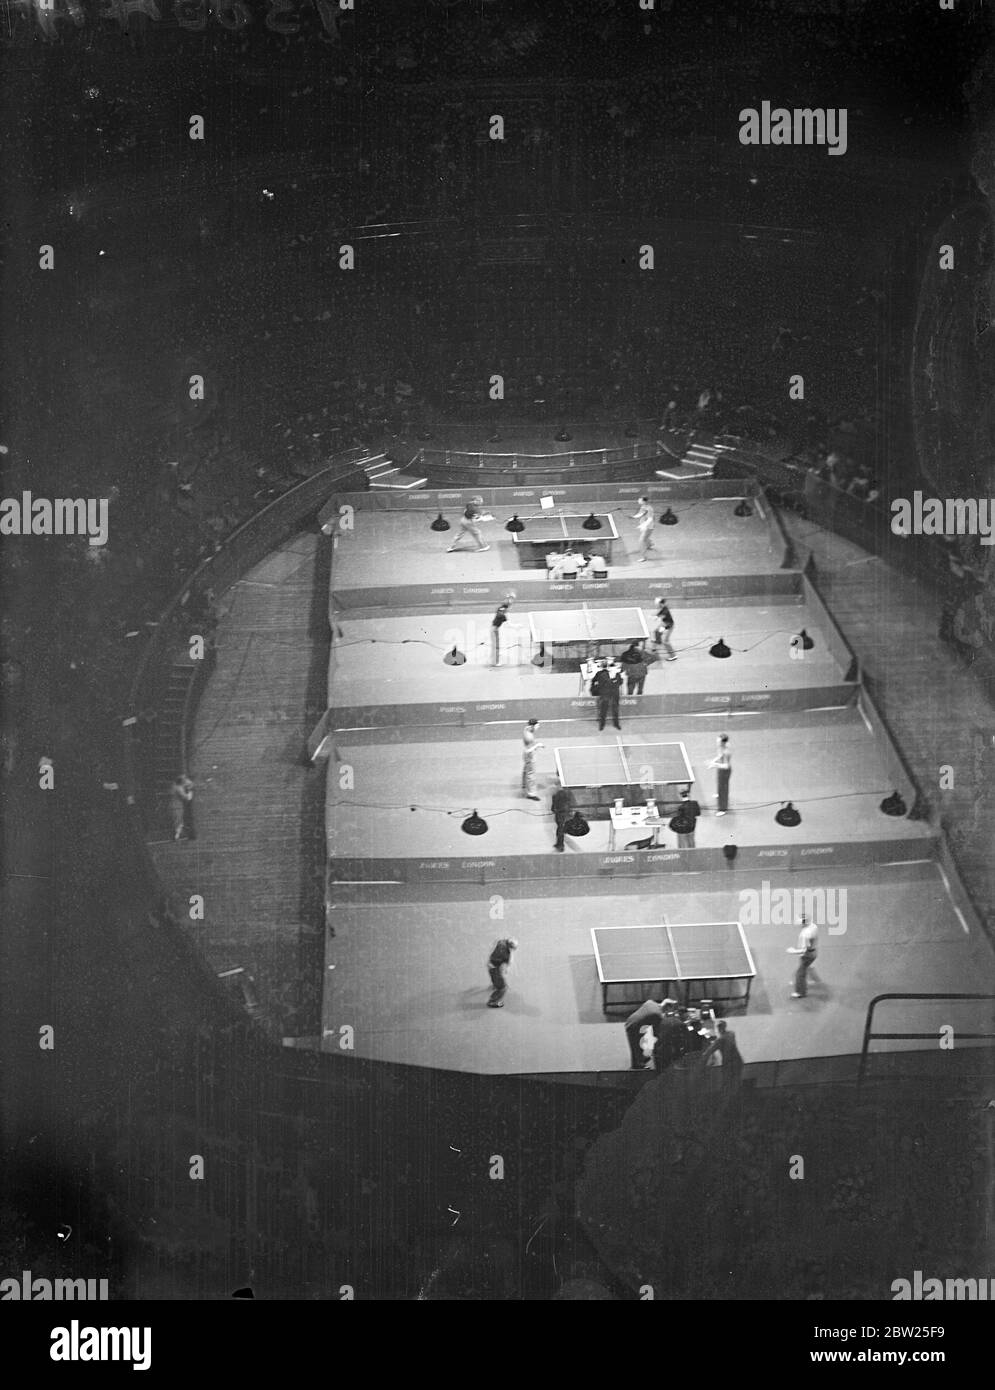 Tschechische Meisterin bei Tischtennis-Weltmeisterschaften in London. Die Tischtennis-Weltmeisterschaften haben in der Royal Albert Hall in London eröffnet. Es gibt eine starke ausländische Vertretung. Foto zeigt, eine Übersicht des Wettbewerbs. 24. Januar 1938 Stockfoto